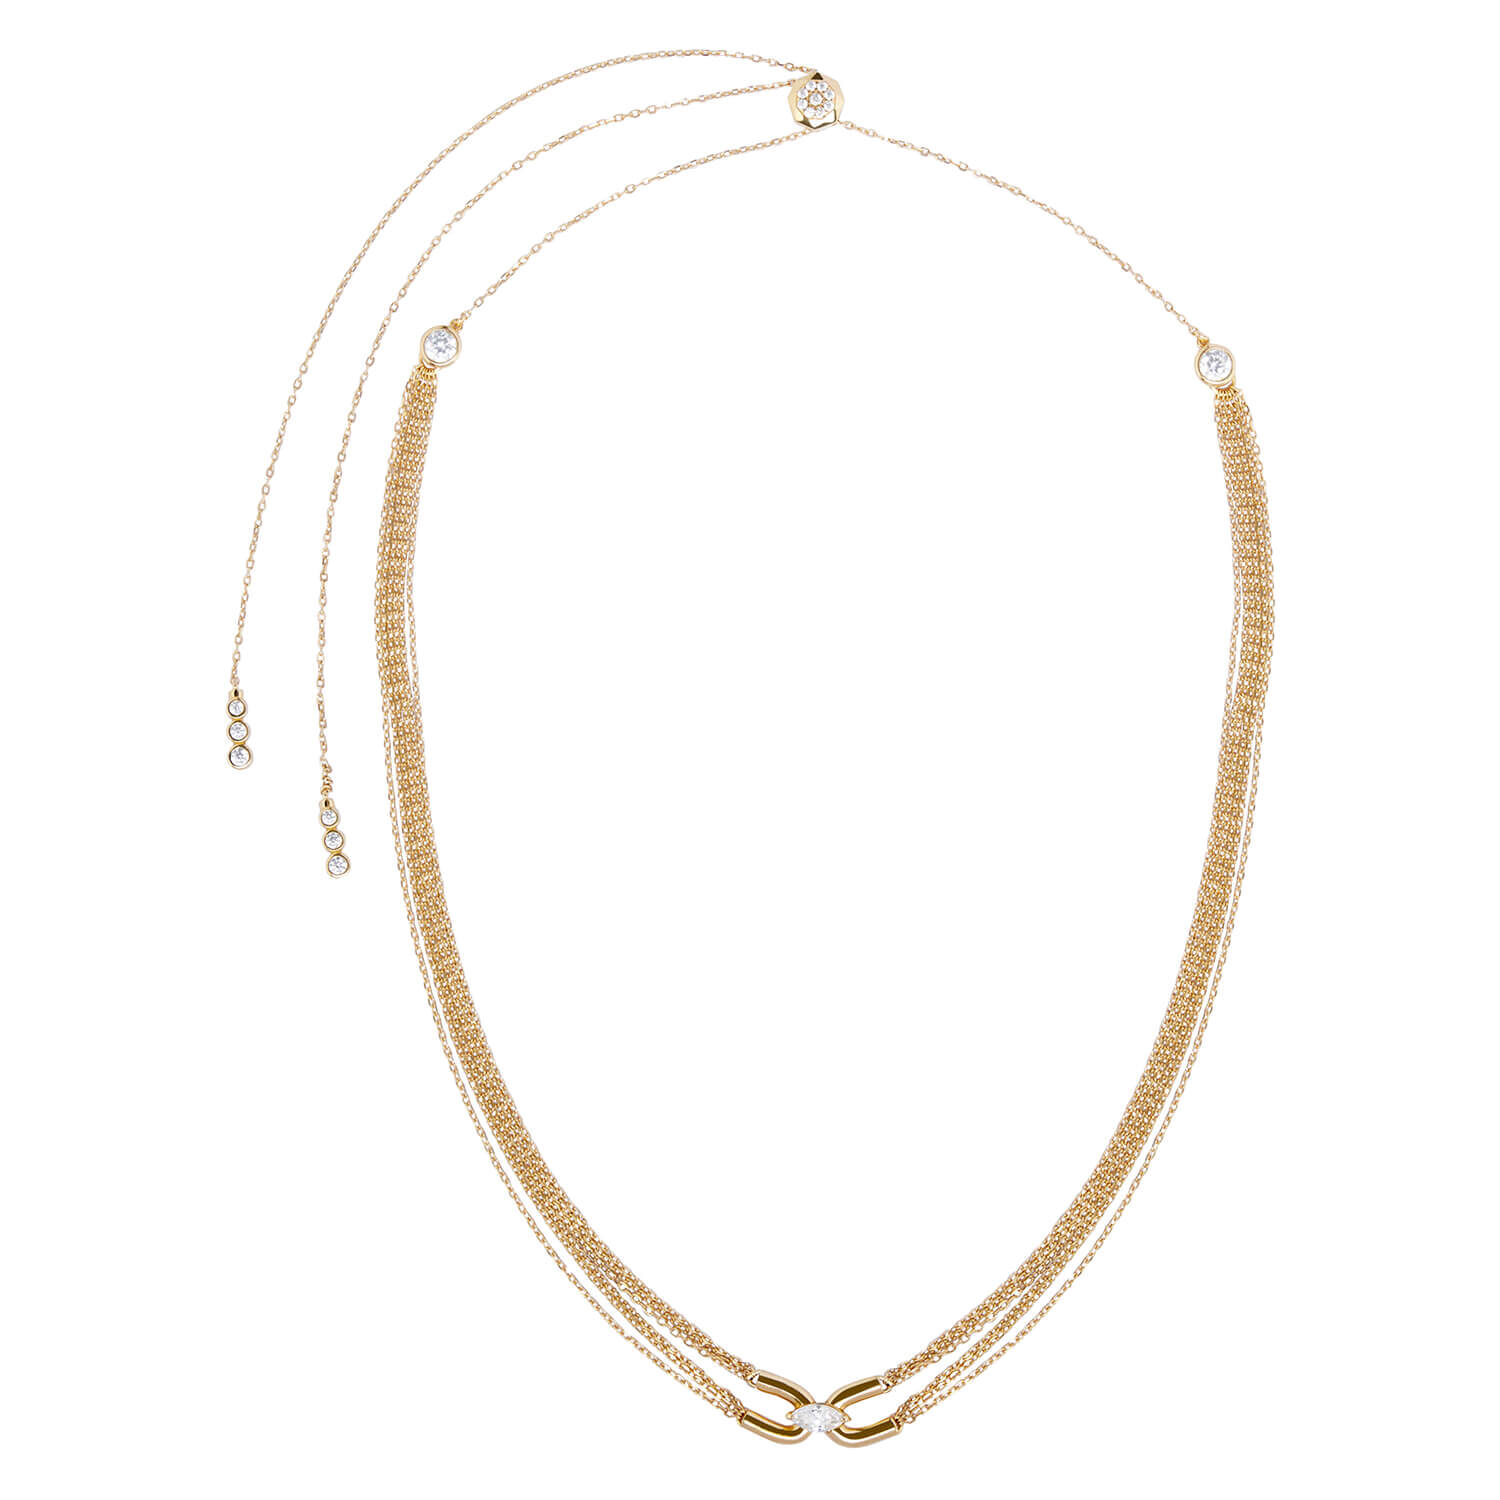 Vox Necklace – Bexon Jewelry